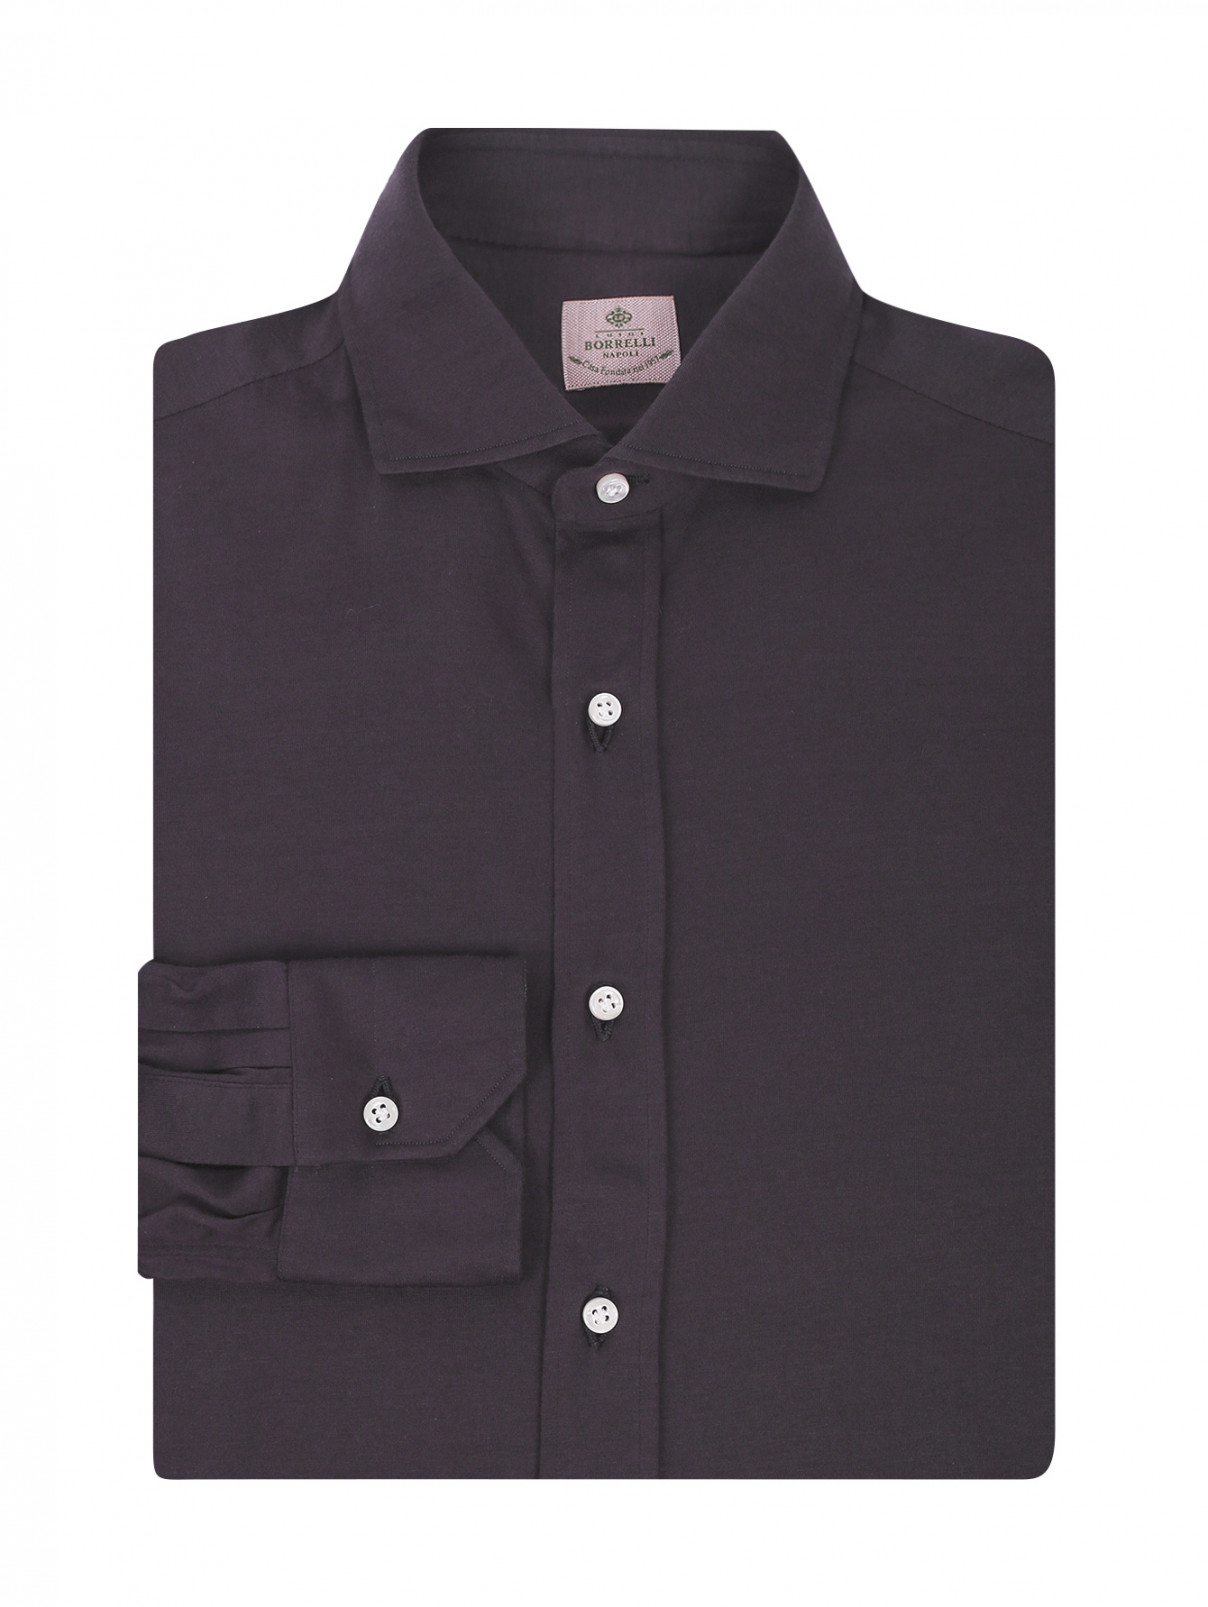 Рубашка из хлопка Borrelli  –  Общий вид  – Цвет:  Серый